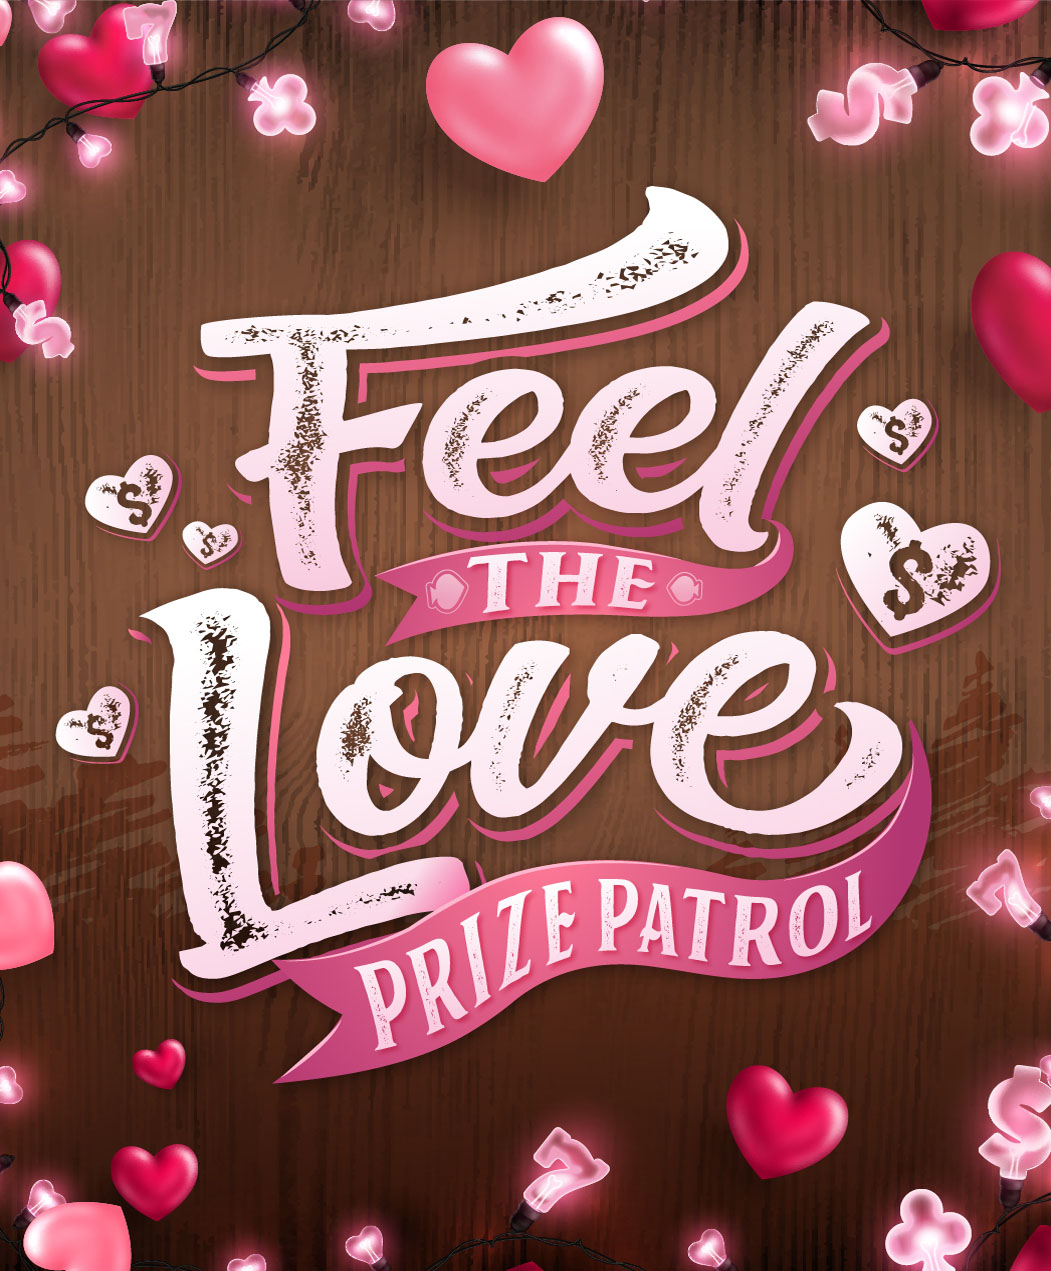 Feel the Love Prize Patrol